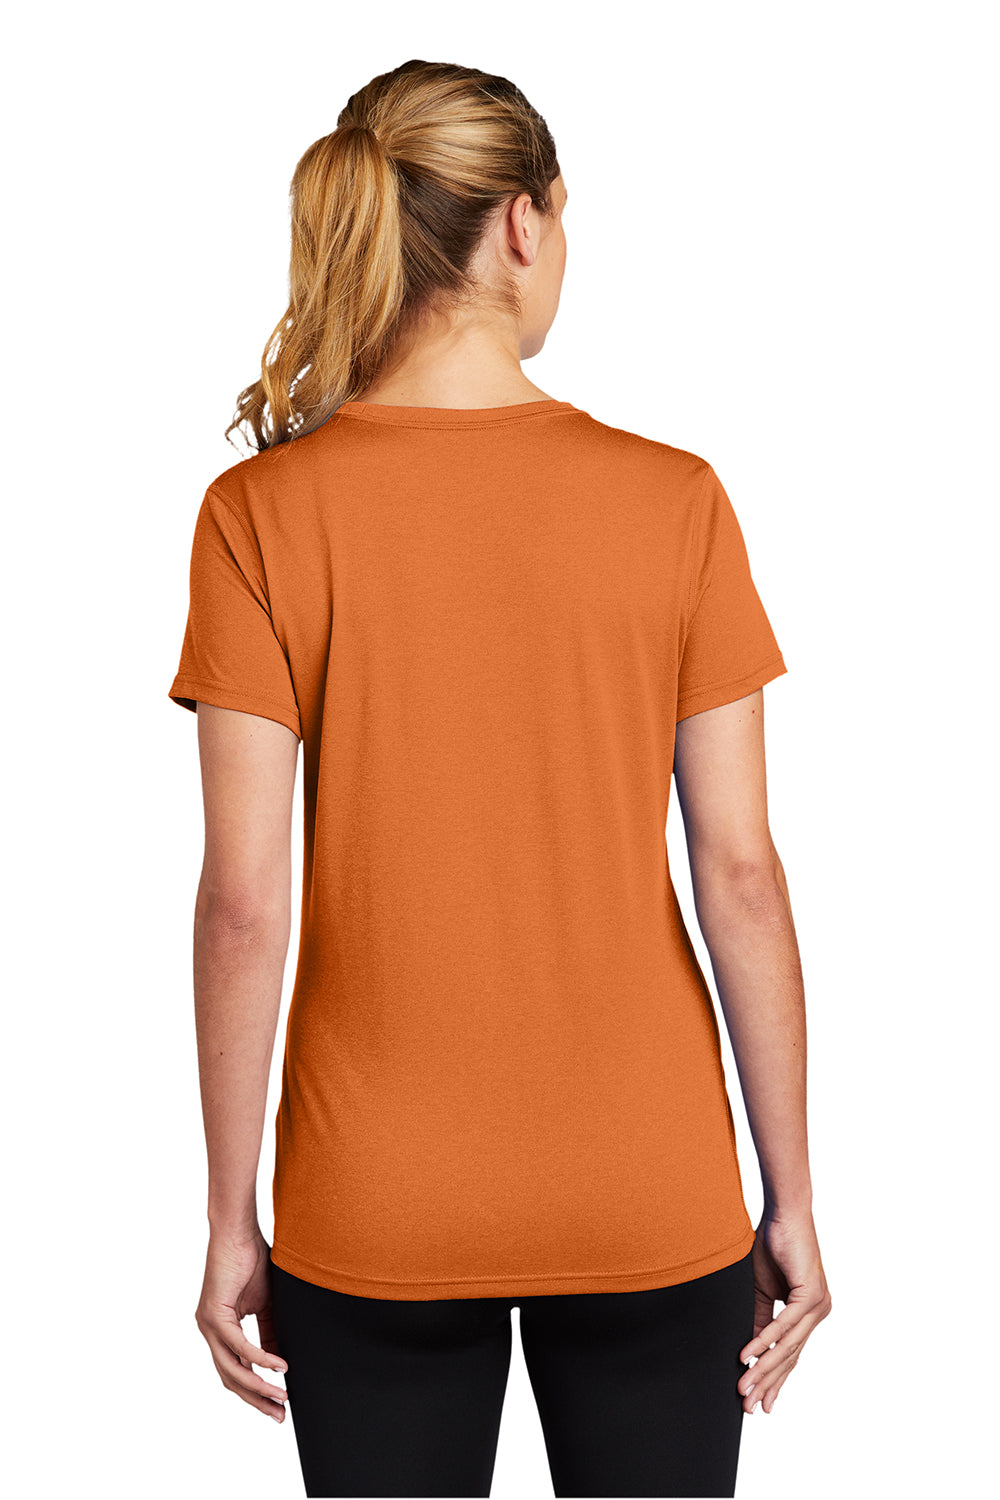 Nike DV7312 Womens Team rLegend Dri-Fit Moisture Wicking Short Sleeve Crewneck T-Shirt Desert Orange Model Back